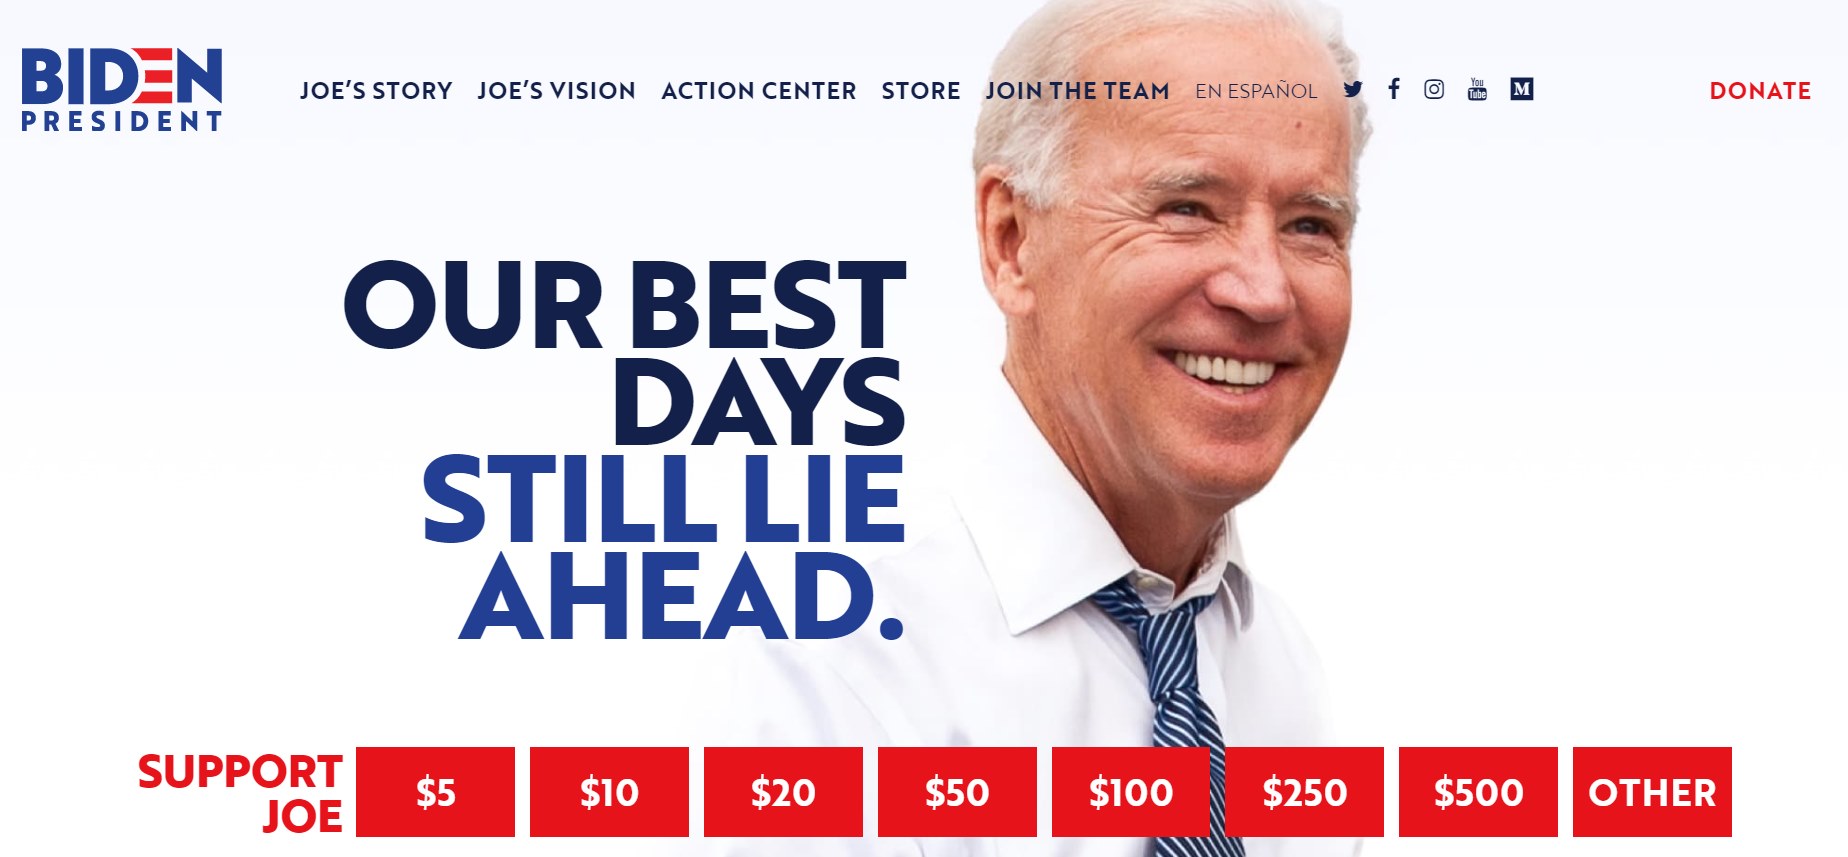 Скріншот з виборчого сайту Джо Байдена 